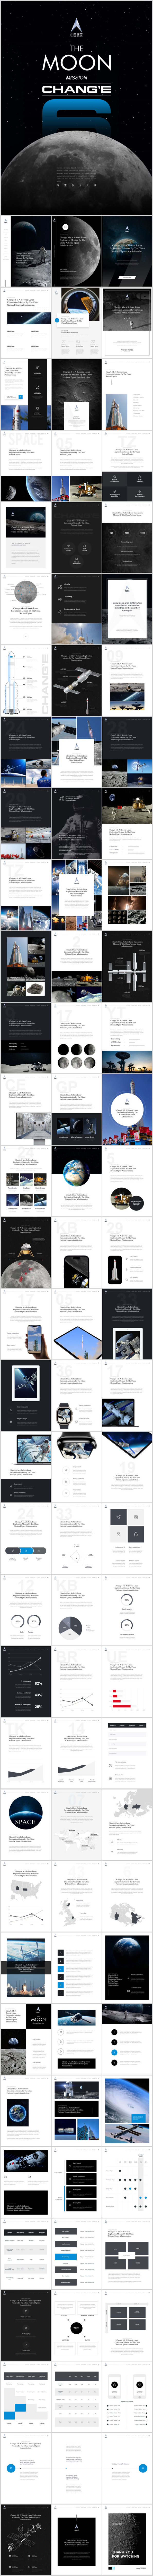 A4竖版嫦娥探月keynote模板